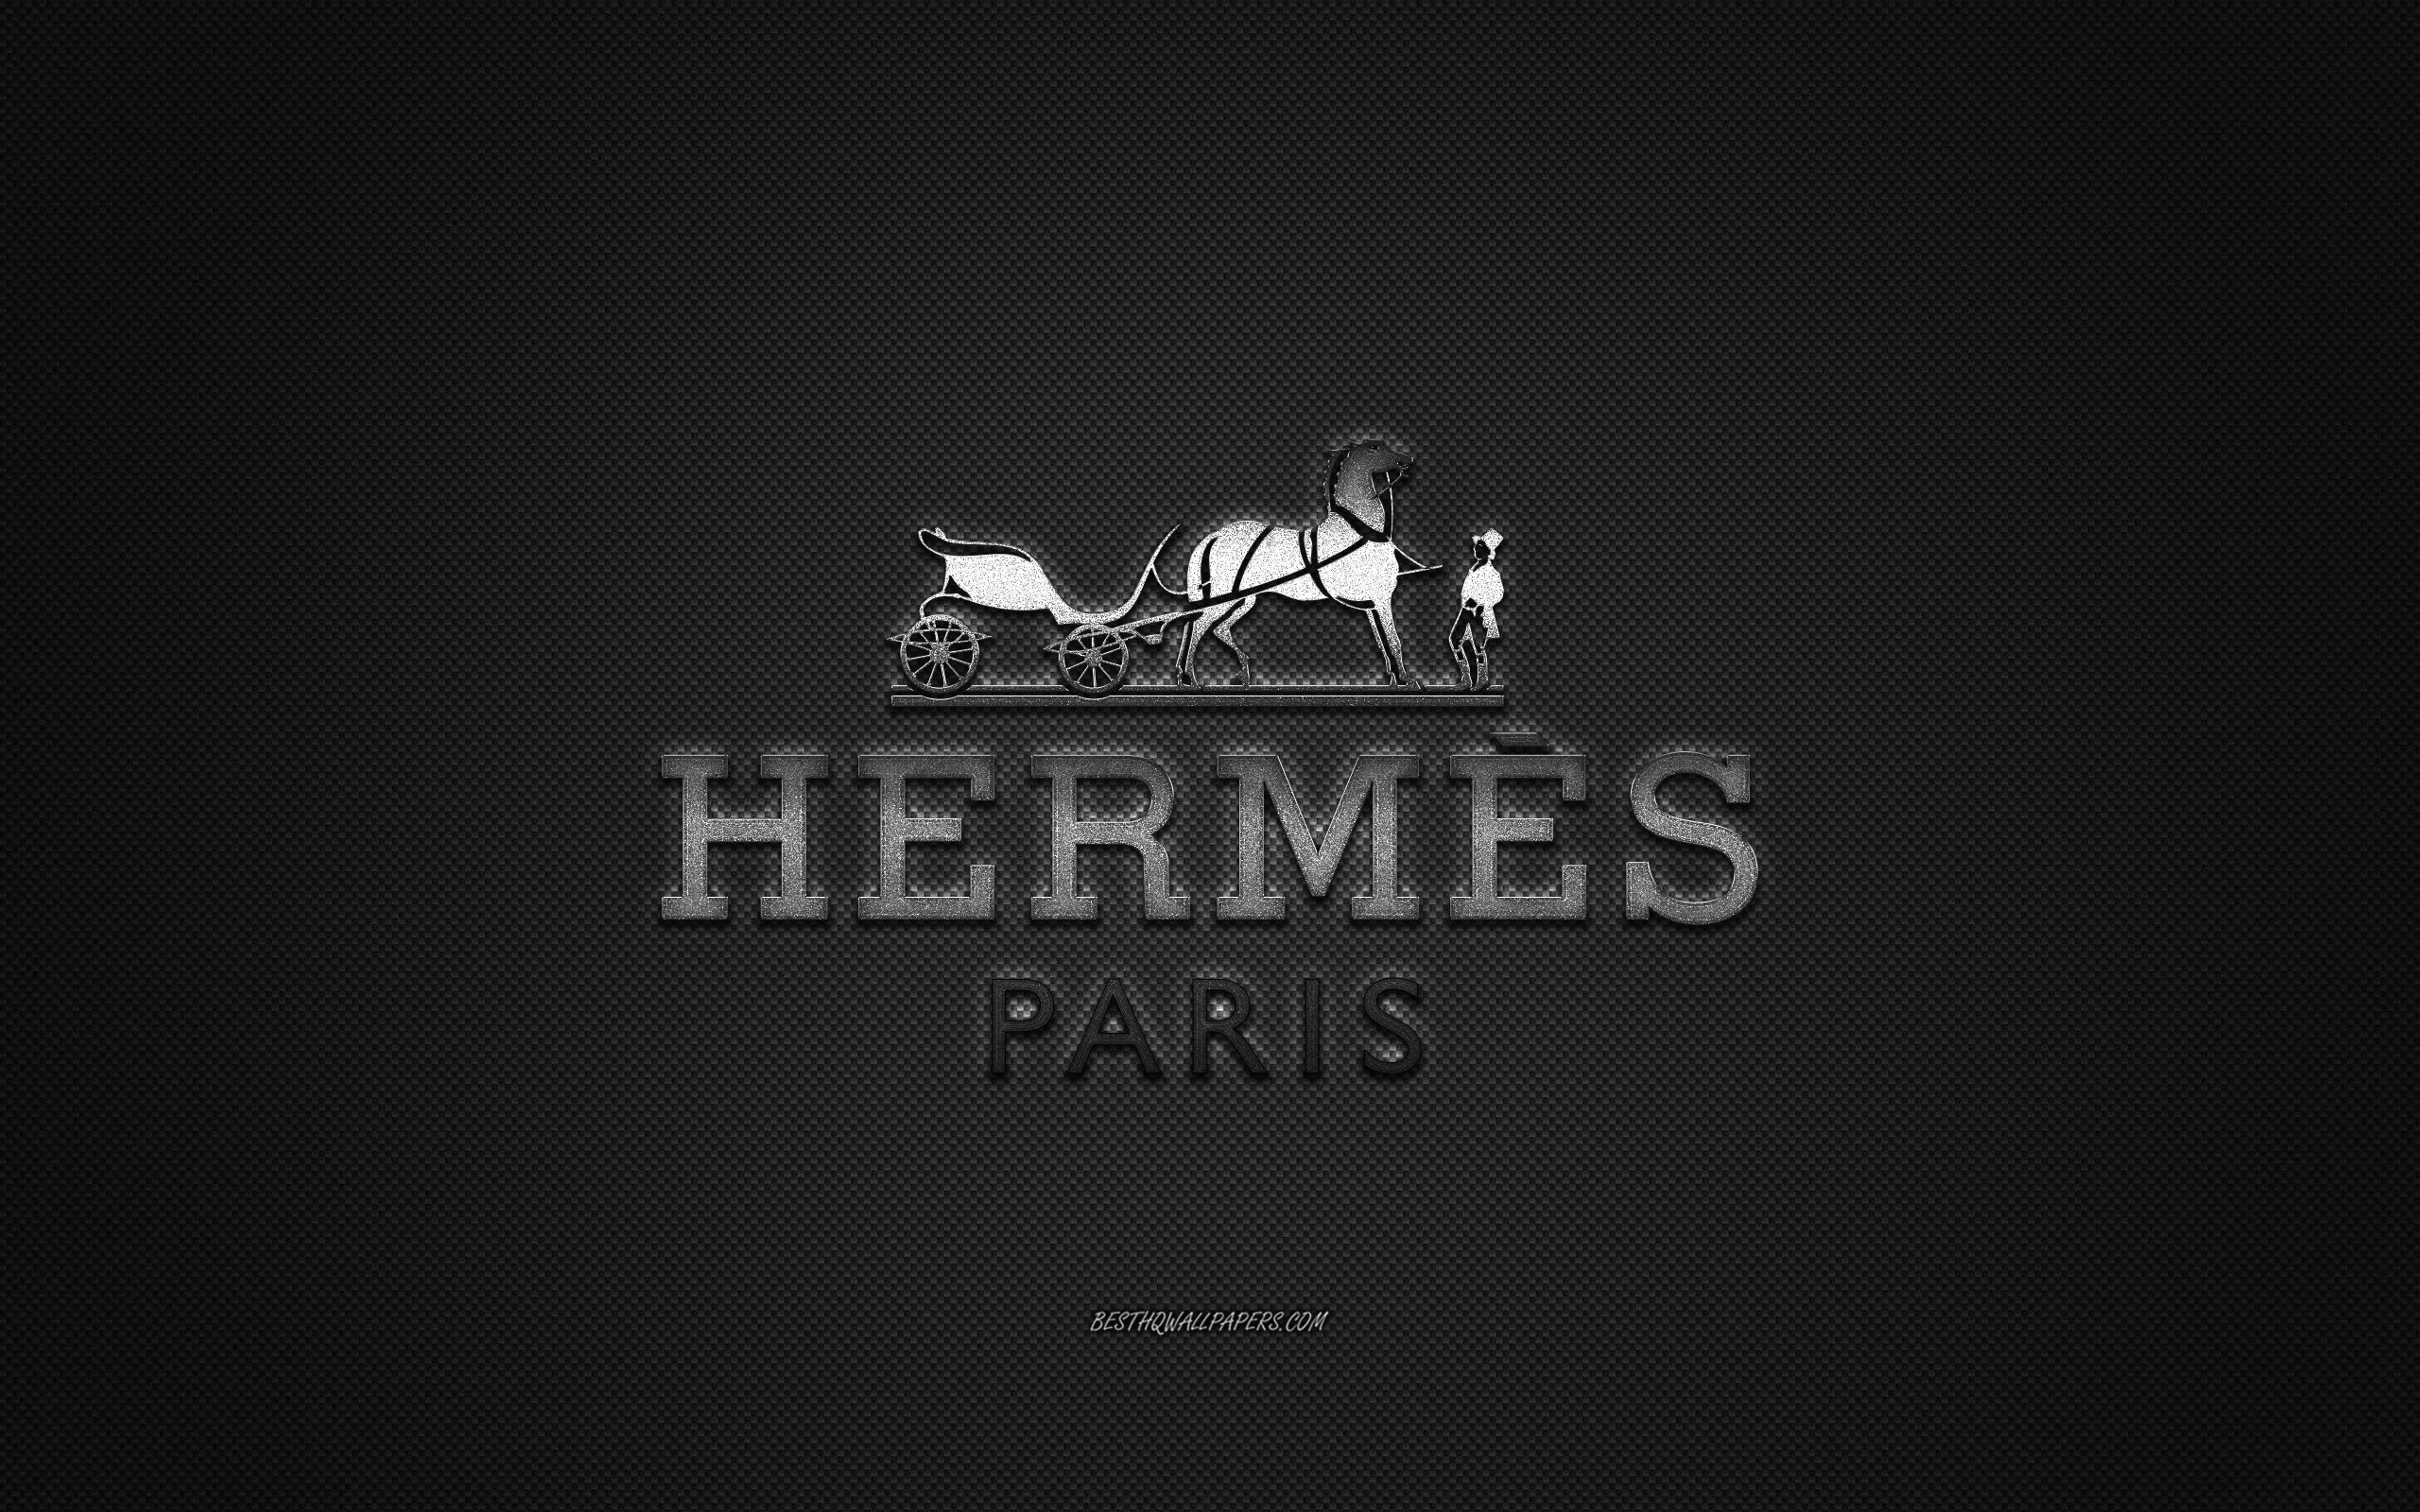 Hermès HD Wallpapers  Wallpaper Cave